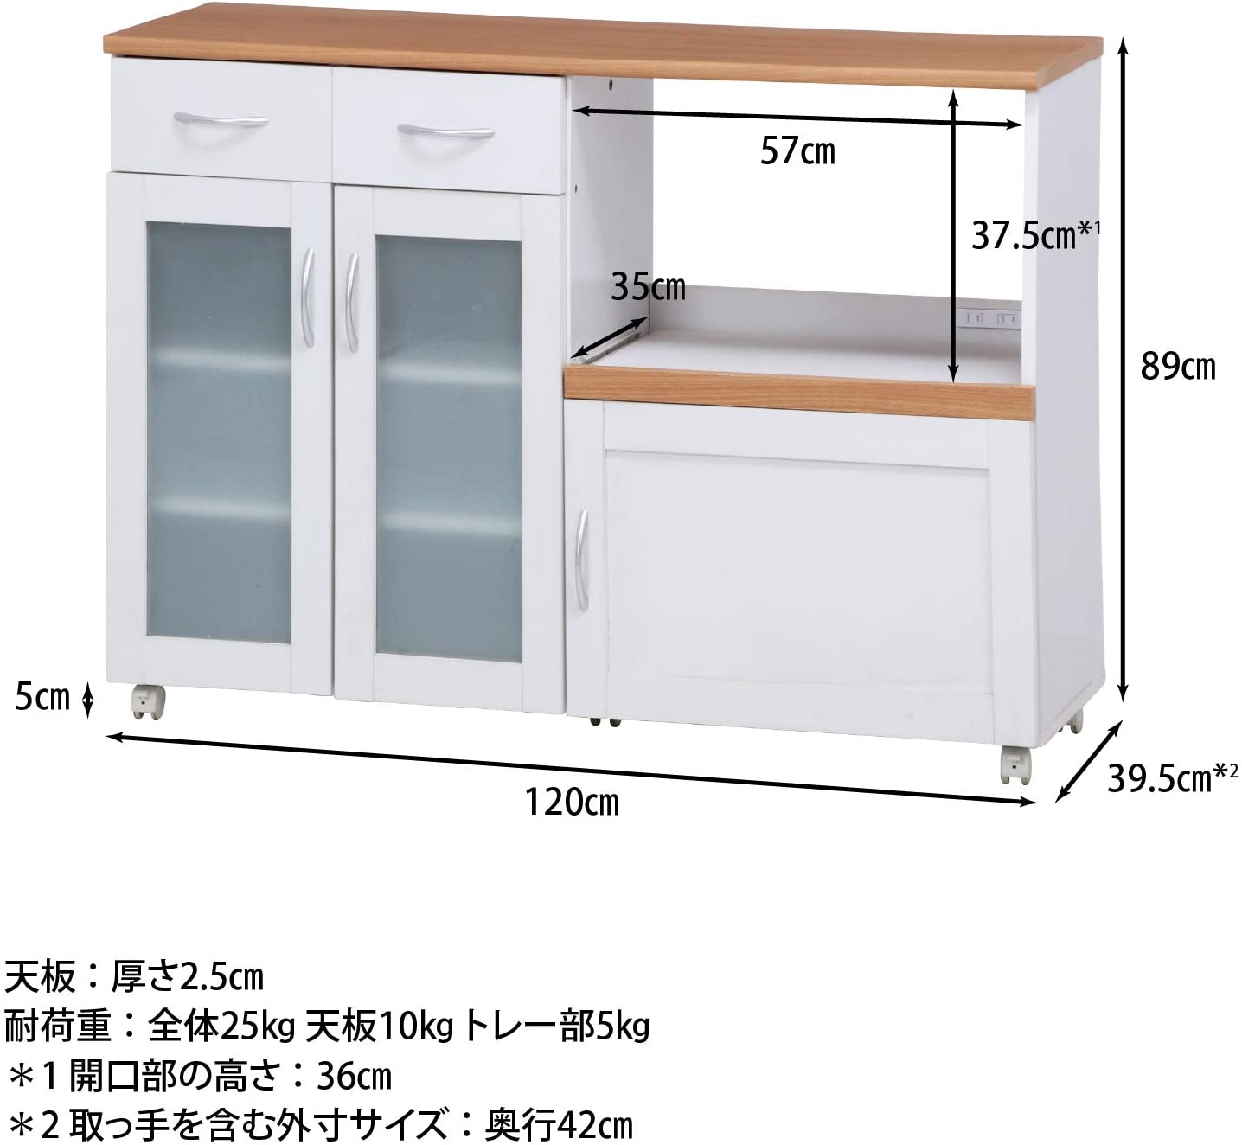 不二貿易(FBC) キッチンカウンター サージュ 96820 幅120cmの商品画像3 